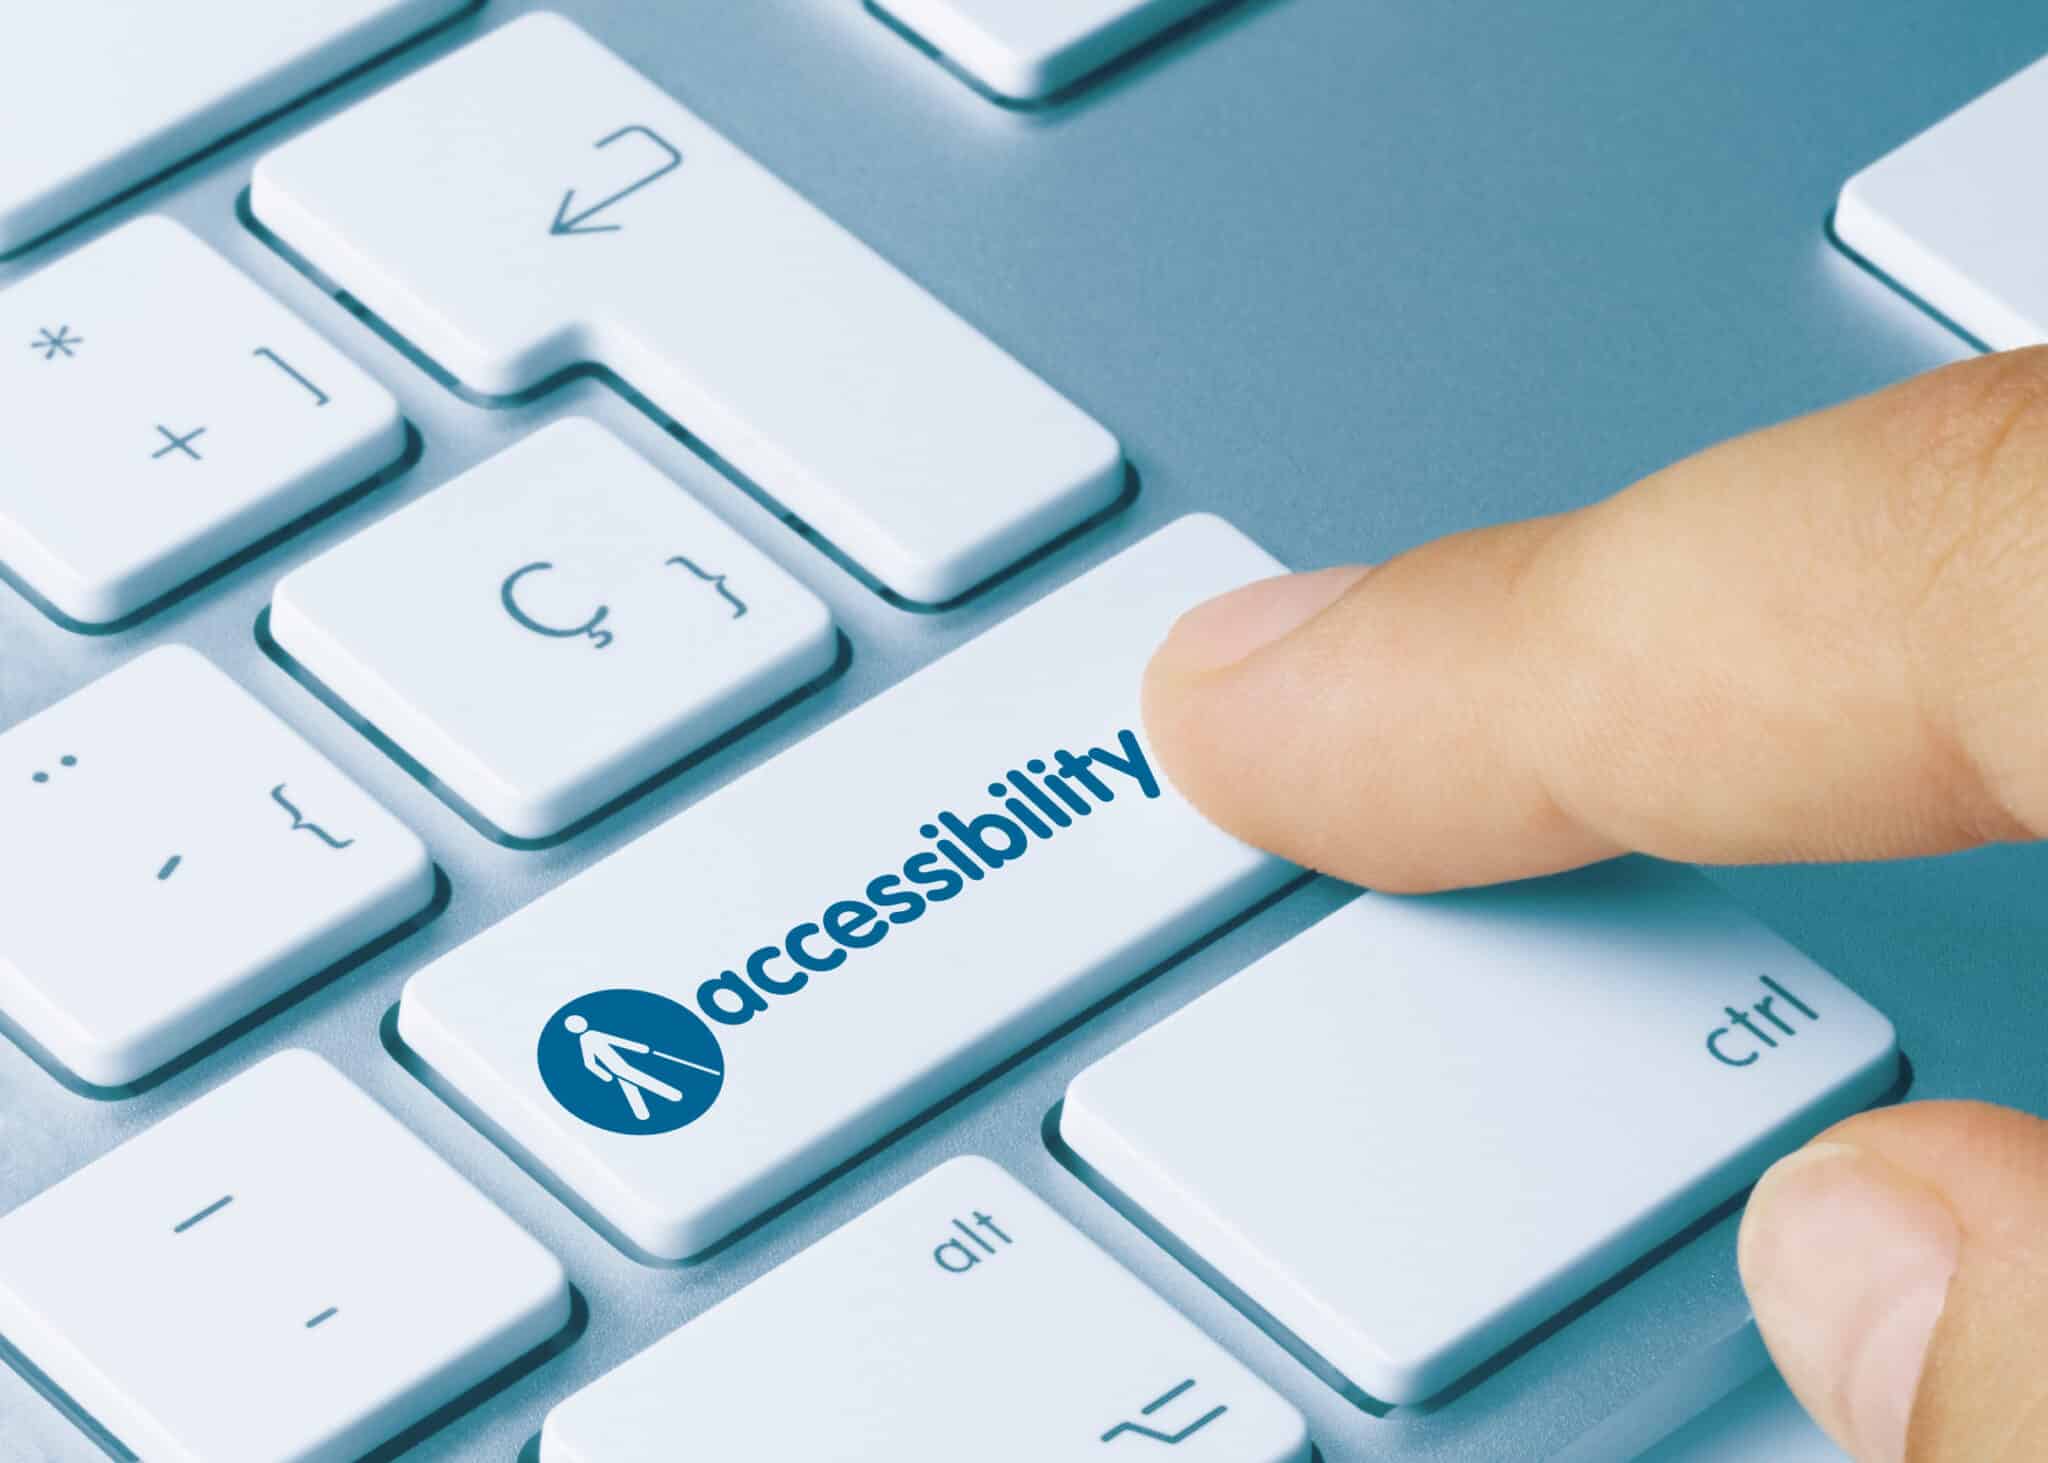 Accessibility - Inscription on Blue Keyboard Key.